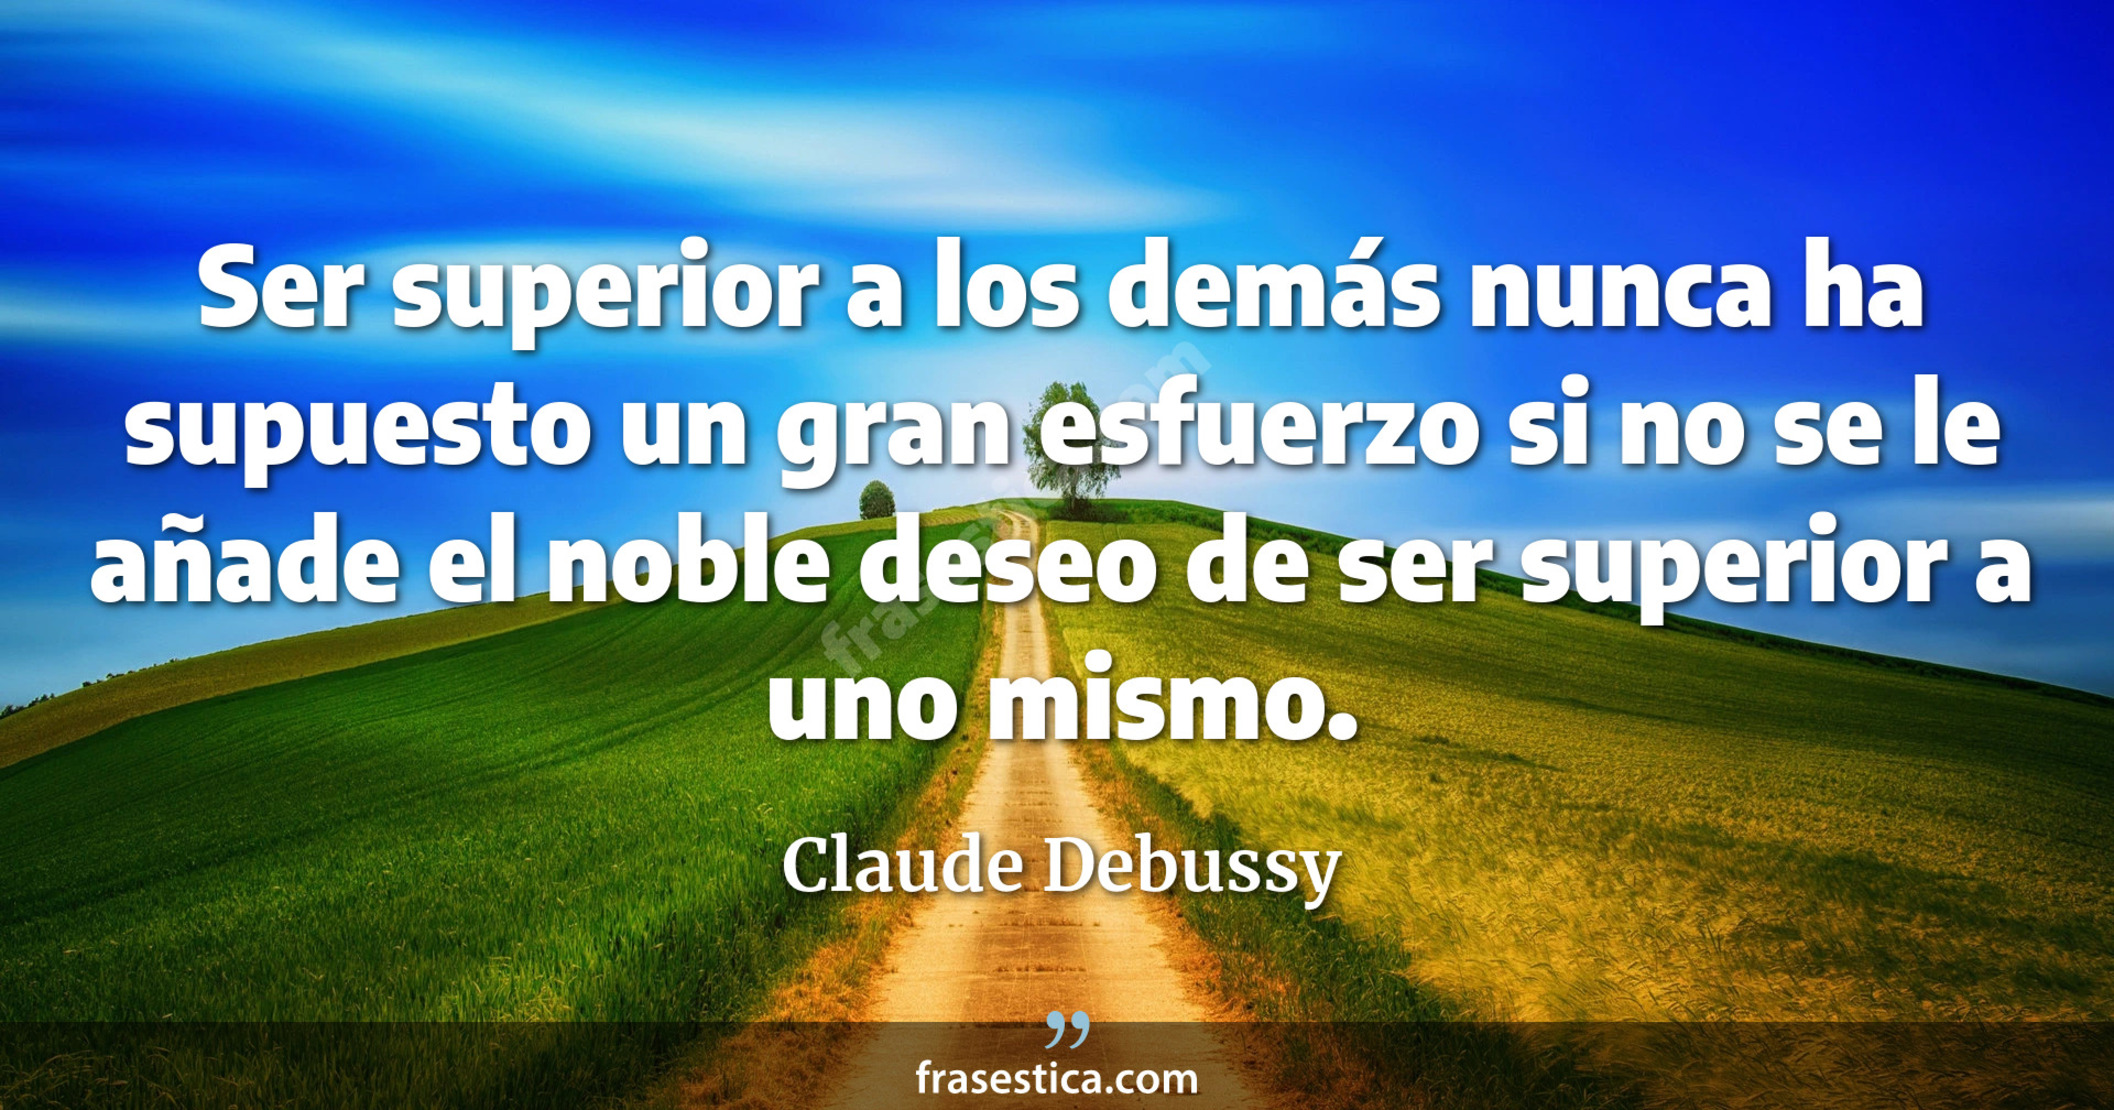 Ser superior a los demás nunca ha supuesto un gran esfuerzo si no se le añade el noble deseo de ser superior a uno mismo. - Claude Debussy